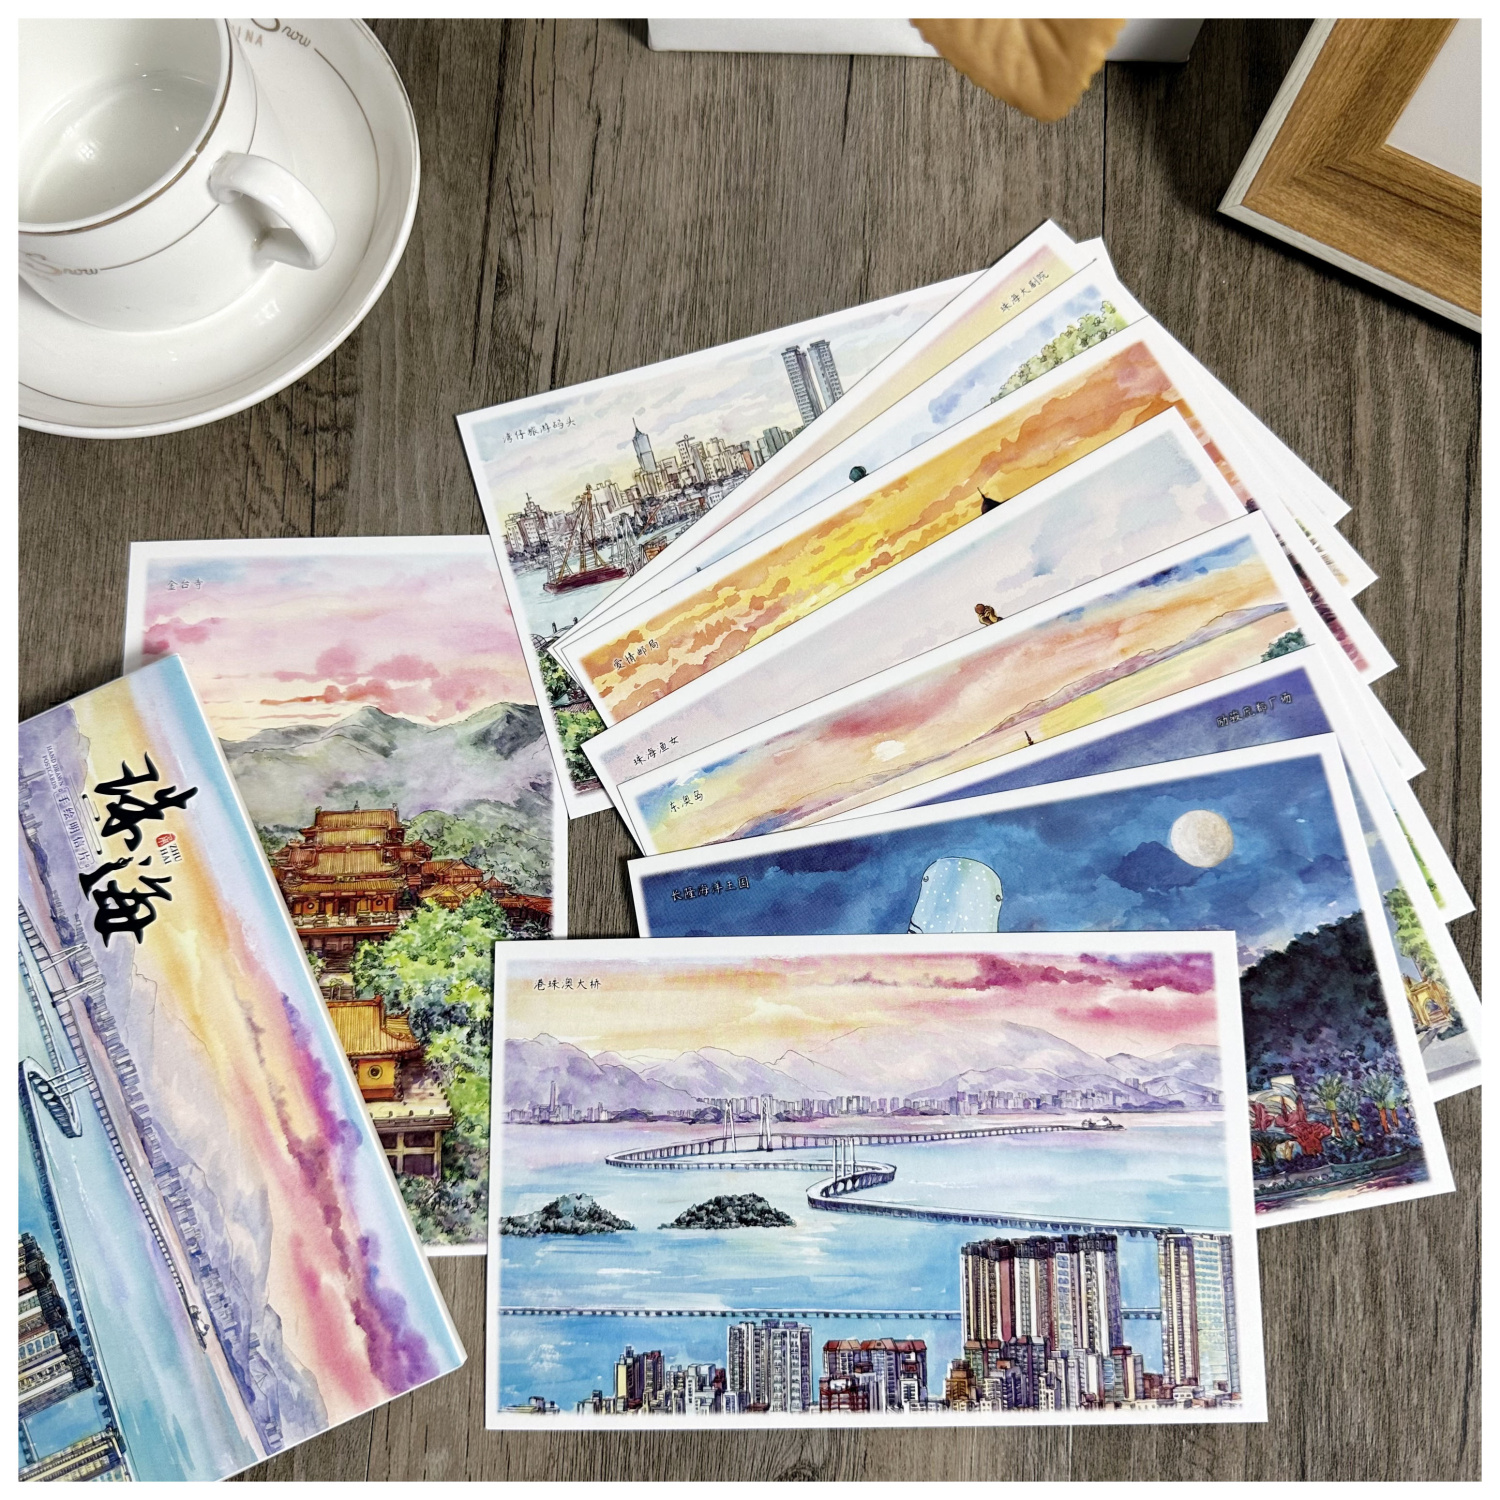 10张手绘版广东珠海明信片城市风景卡片景点旅游纪念港珠澳大桥等